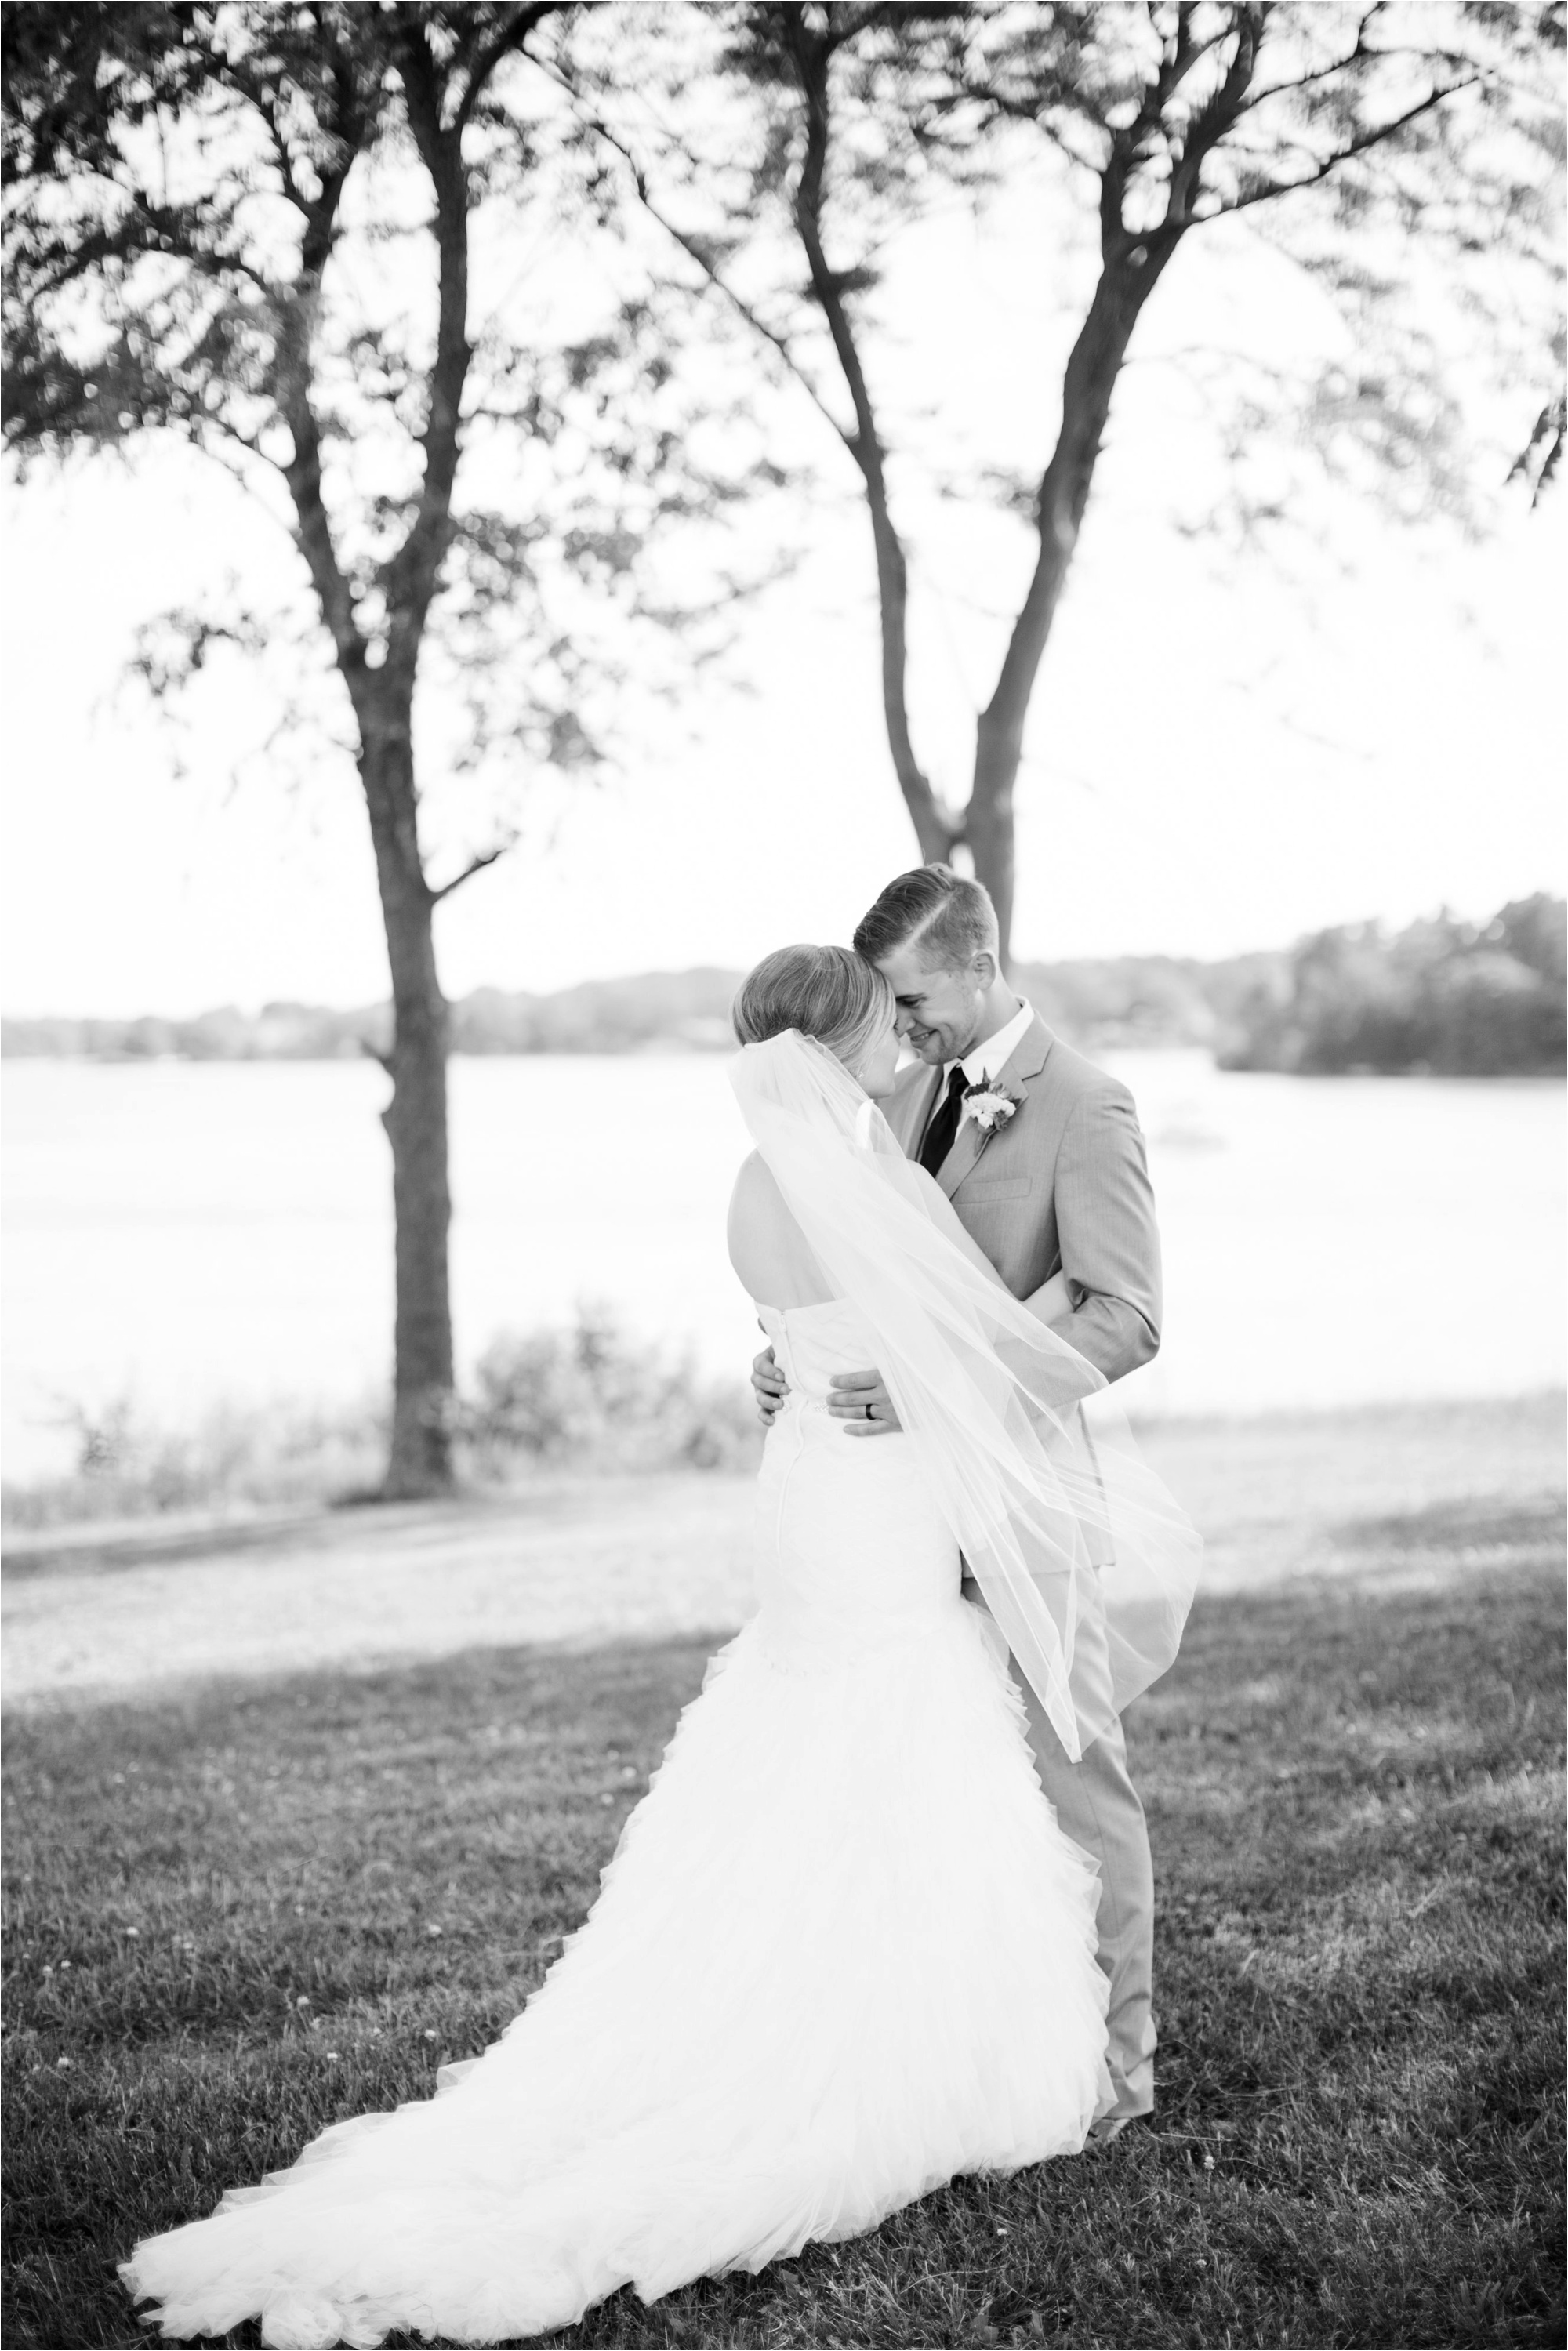 Caitlin and Luke Photography, Bloomington Normal Wedding Photographers, Illinois Wedding Photographers, Illinois Husband and Wife Wedding Photography Team_0332.jpg